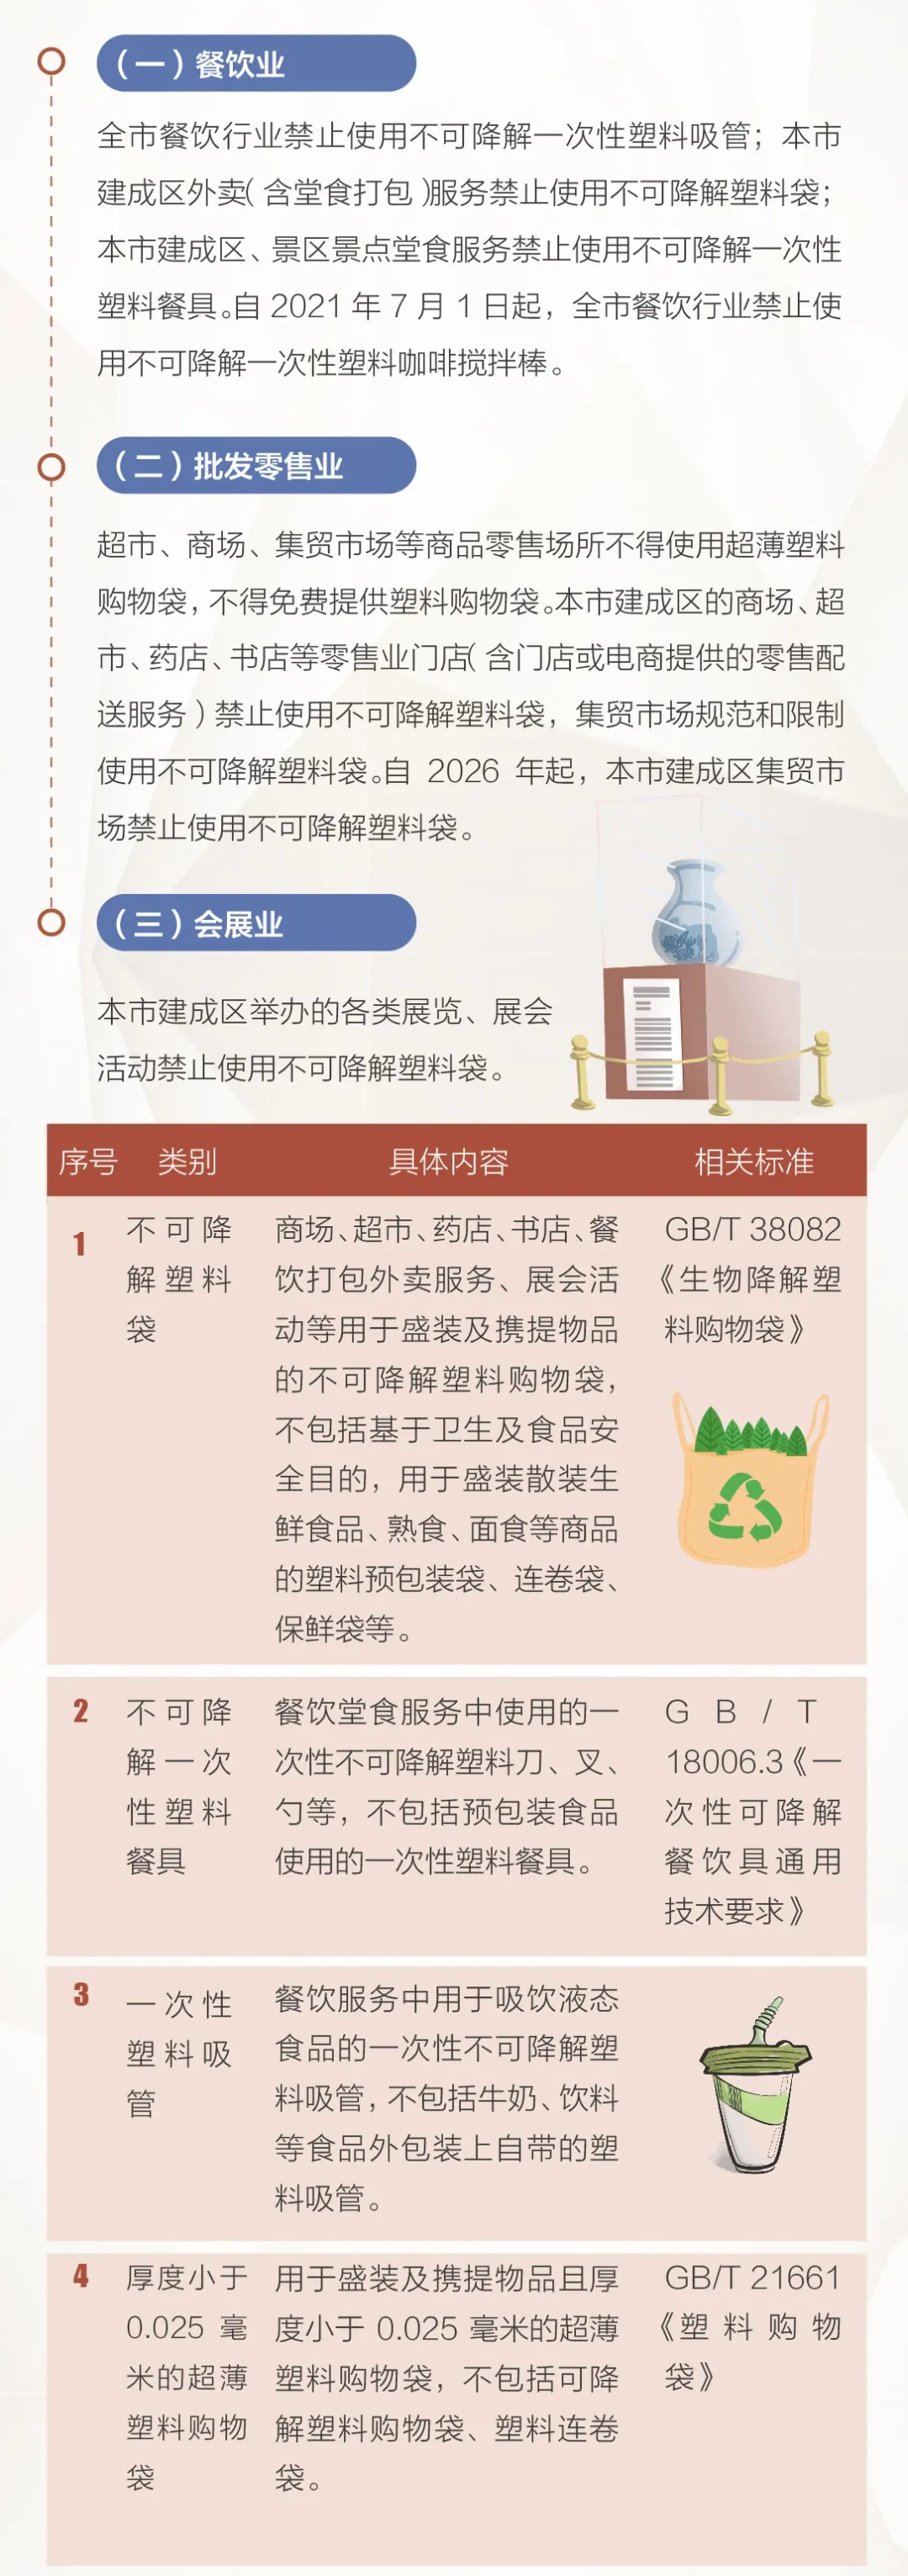 北京市塑料污染治理工作一图读懂